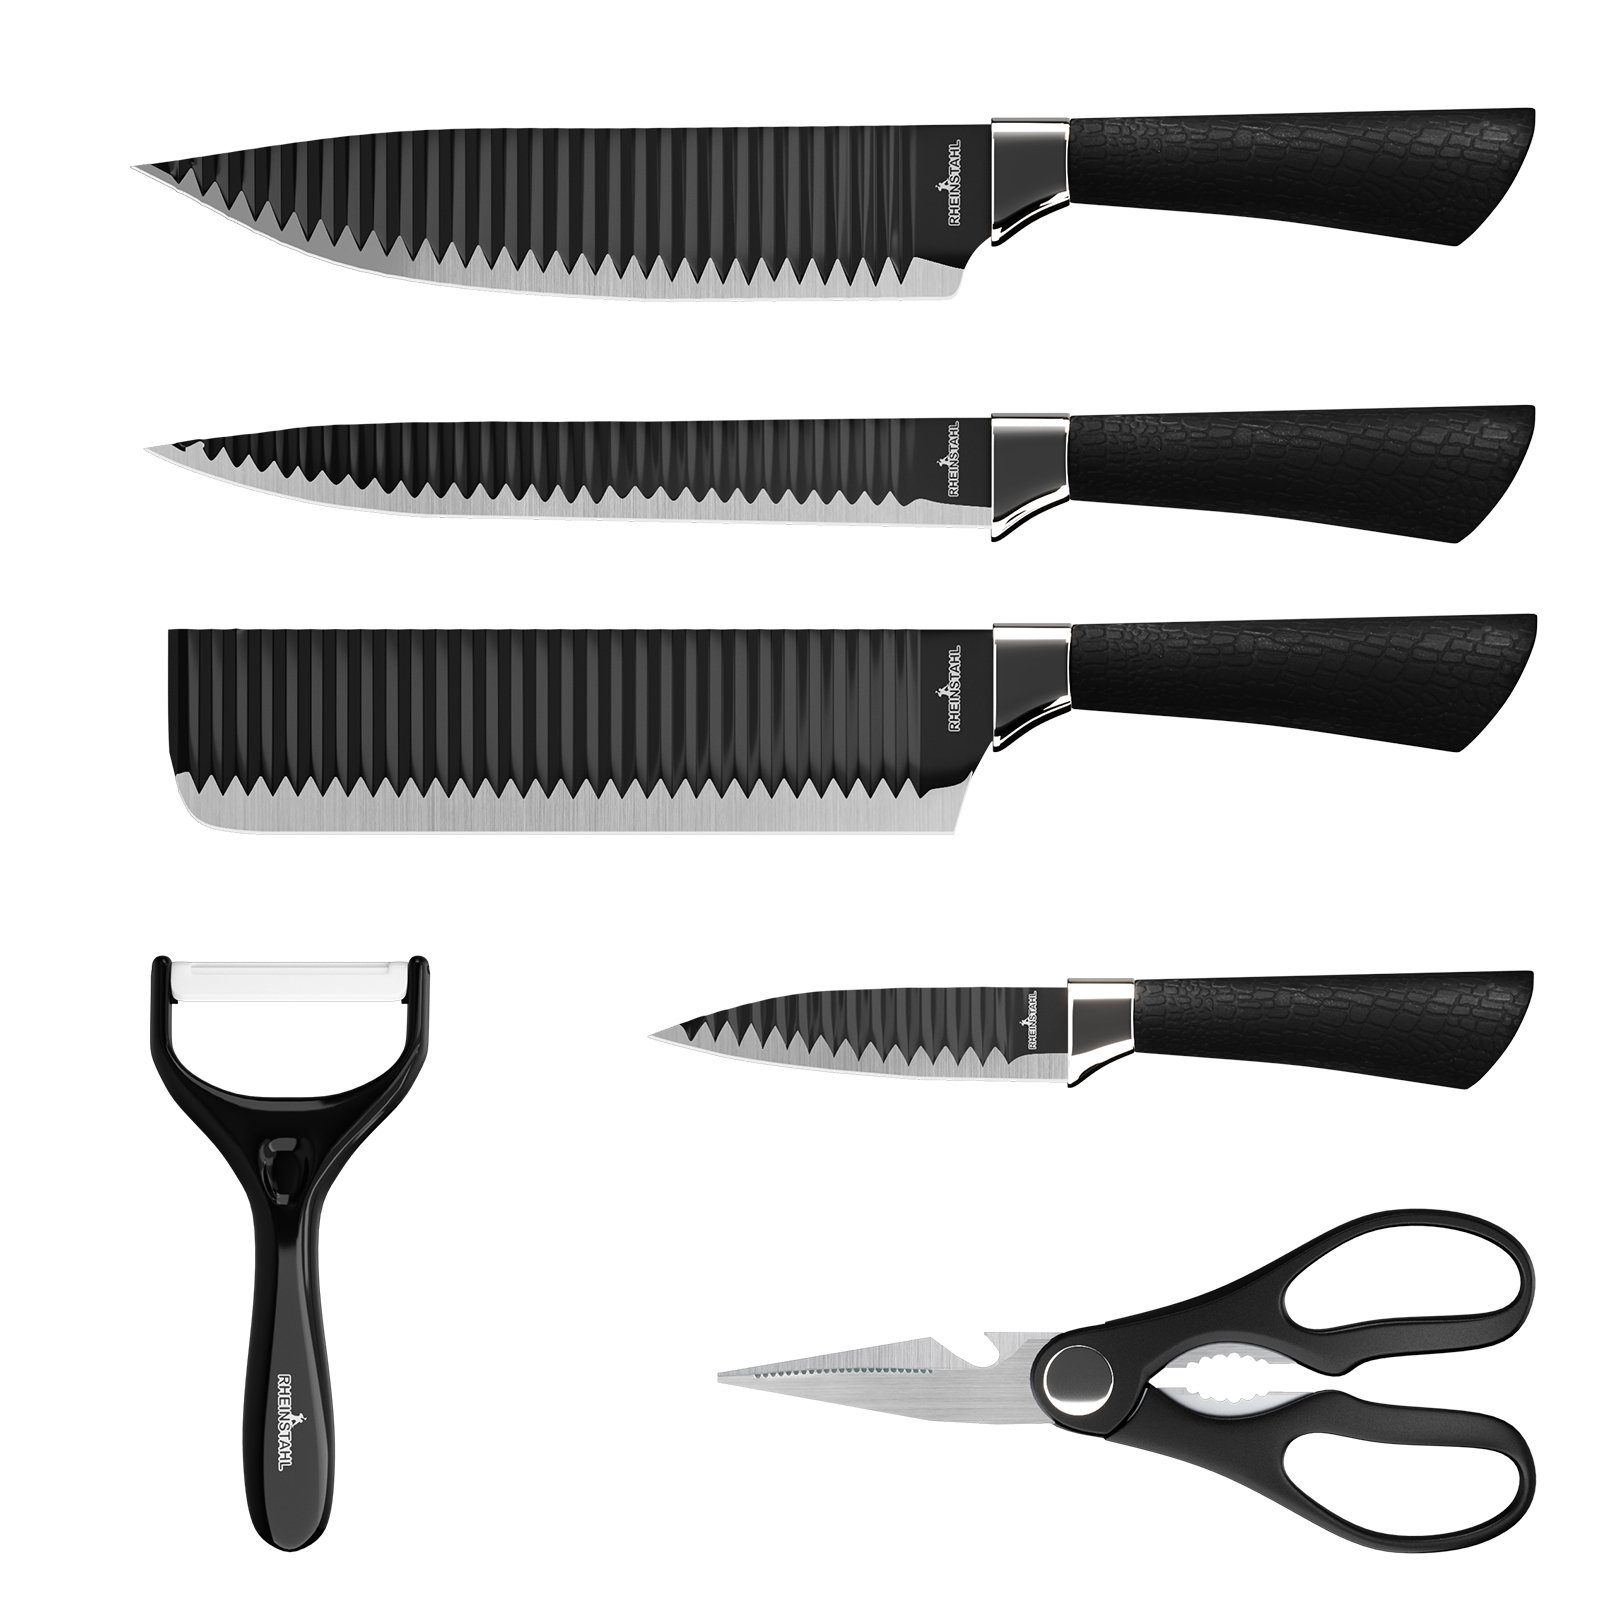 RHEINSTAHL Messer-Set 6 teilig Messerblock Messerset Küchenmesser Set Profi Kochmesser (6-tlg), hochwertiges SelbstschärfenMesser Küchenmesser Set